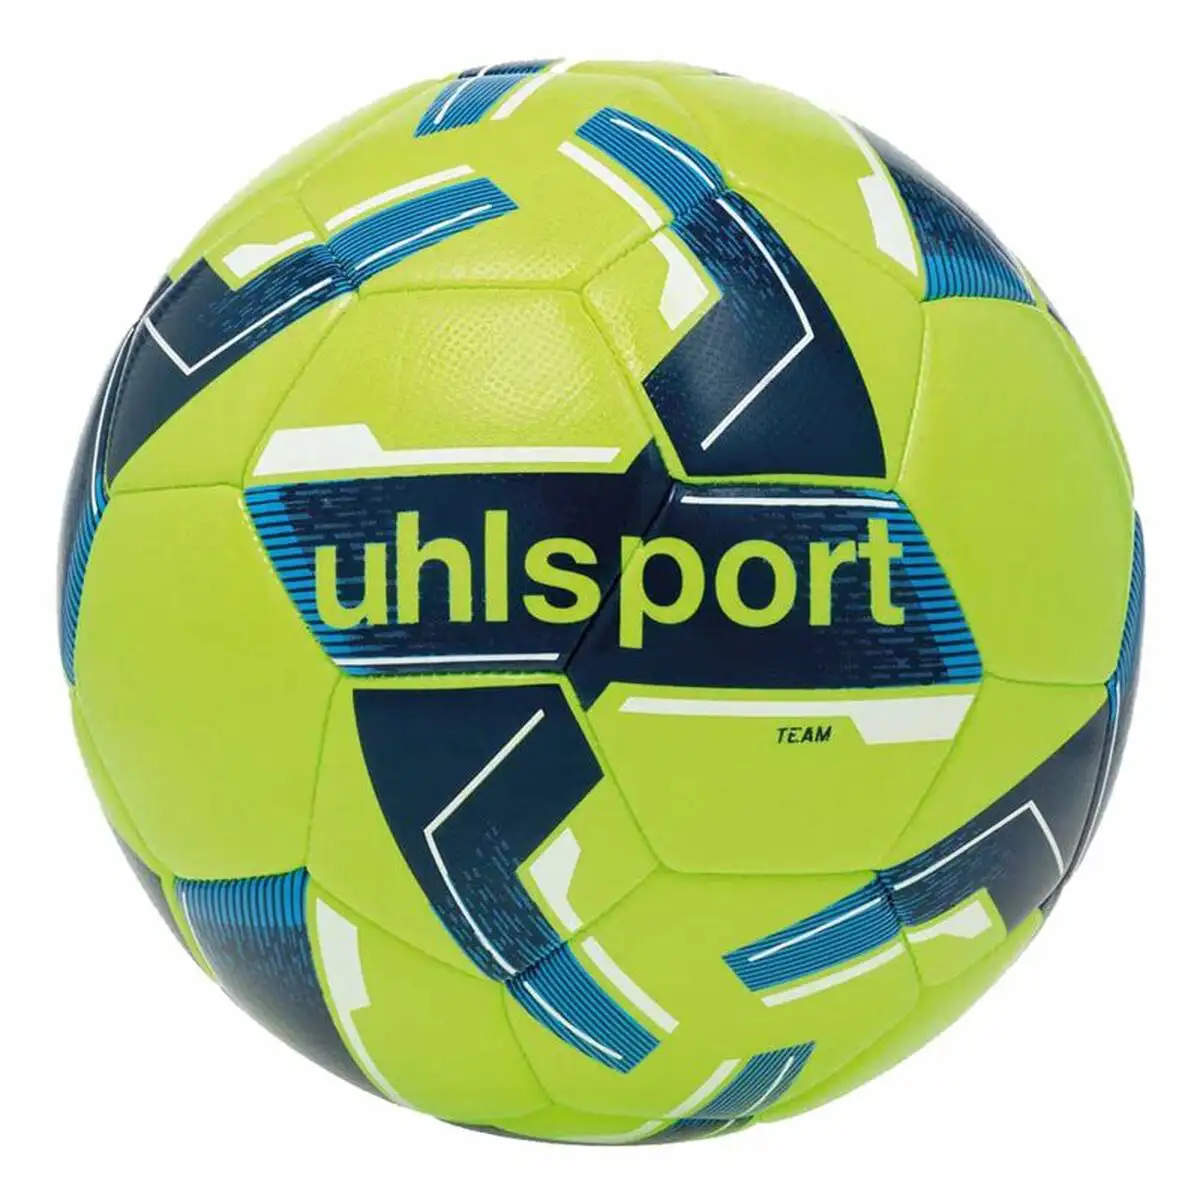 Ballon de football uhlsport team mini jaune vert taille unique_3556. Bienvenue chez DIAYTAR SENEGAL - Où Choisir est un Voyage. Plongez dans notre plateforme en ligne pour trouver des produits qui ajoutent de la couleur et de la texture à votre quotidien.